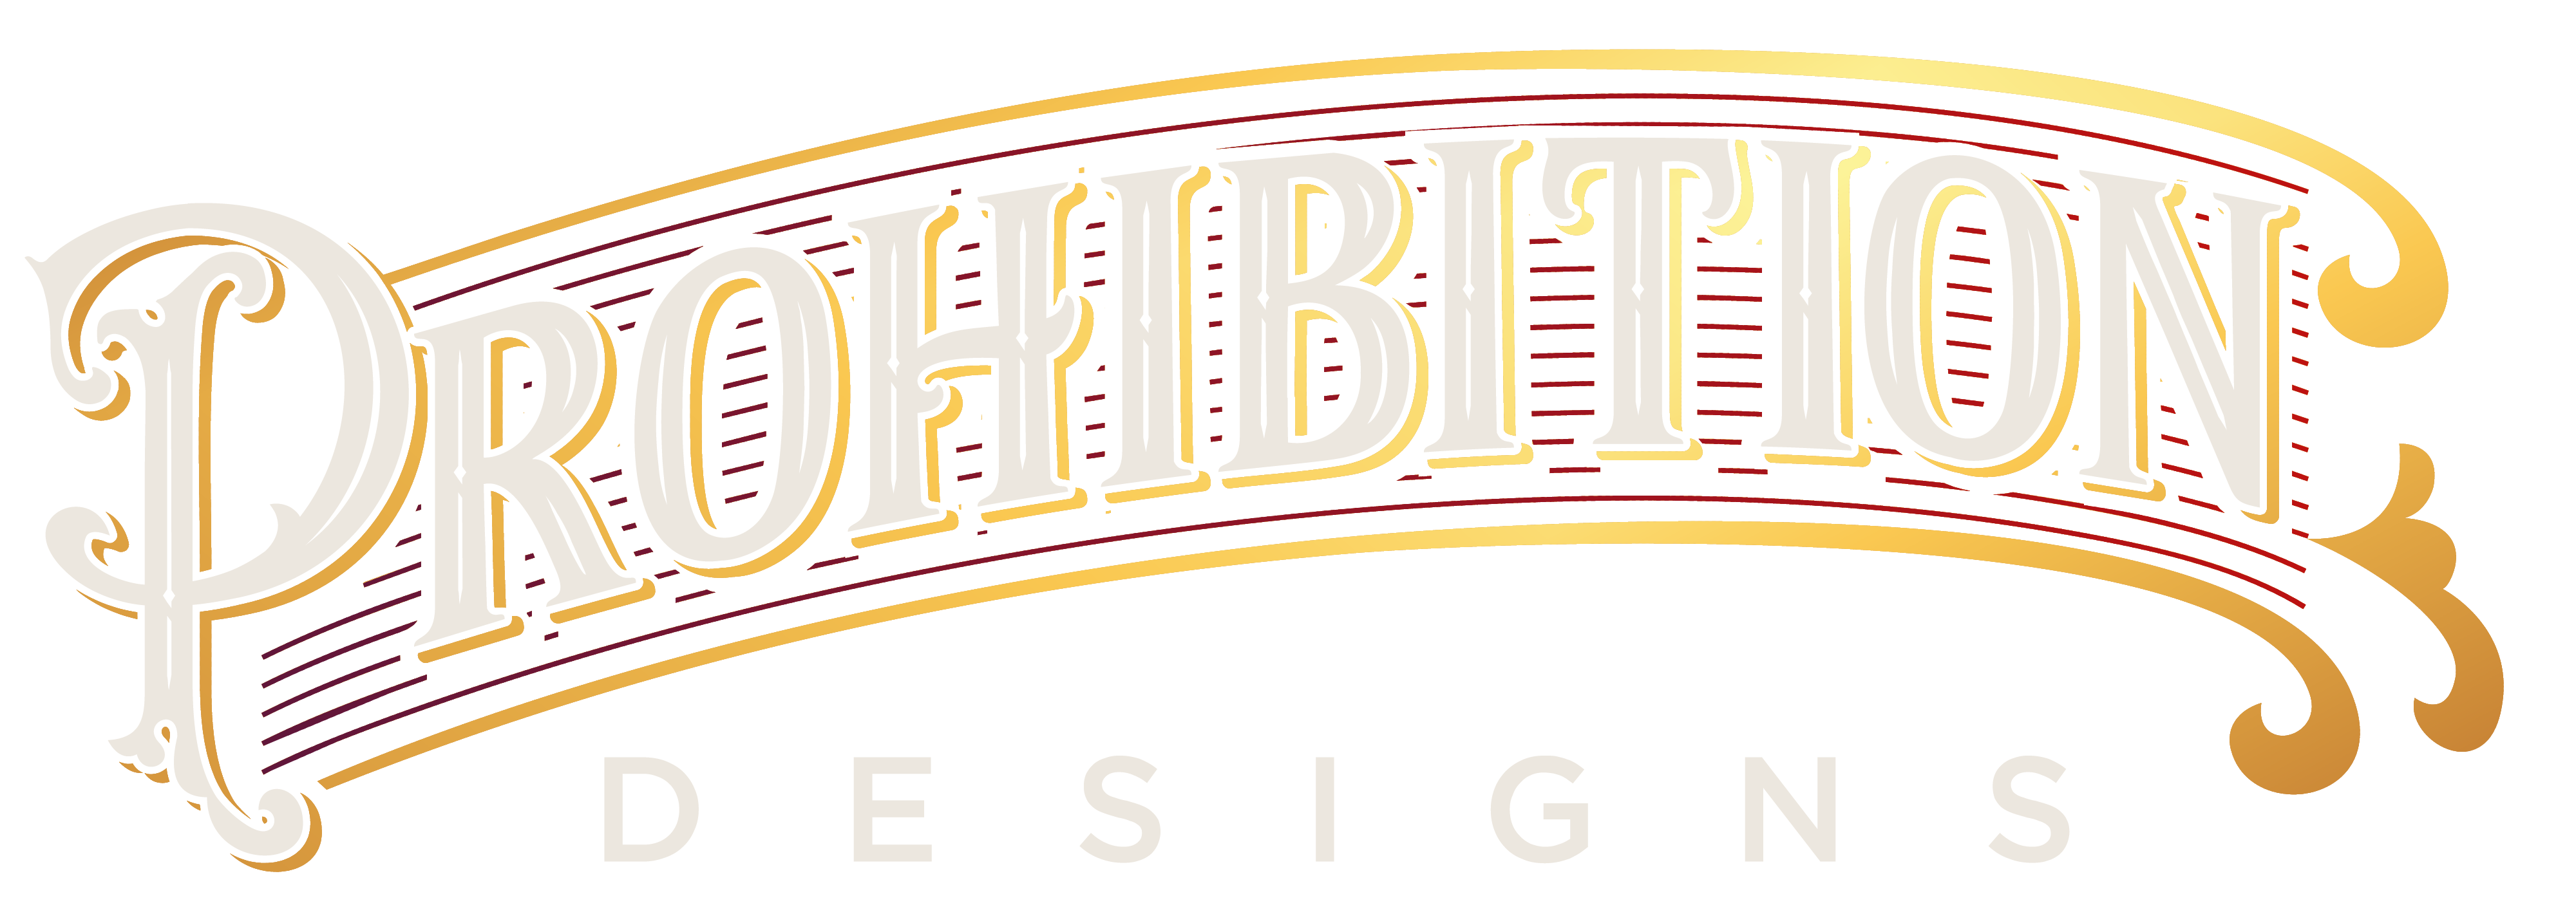 prohibition designs